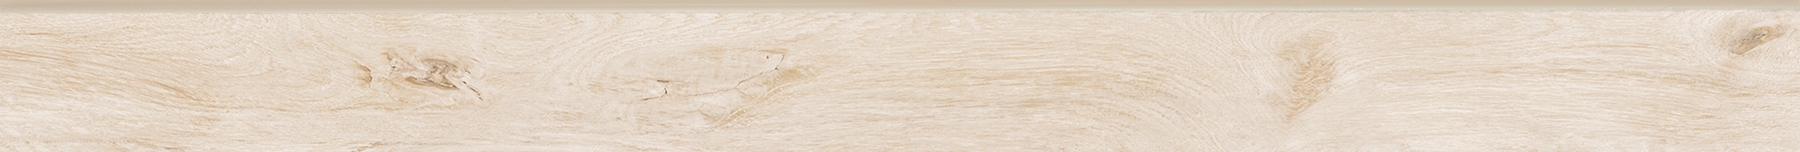 Плинтус Briccole Wood 7.6х90 white ZLXBL1336 000008802 by Zeus Ceramica (Украина) color Белый